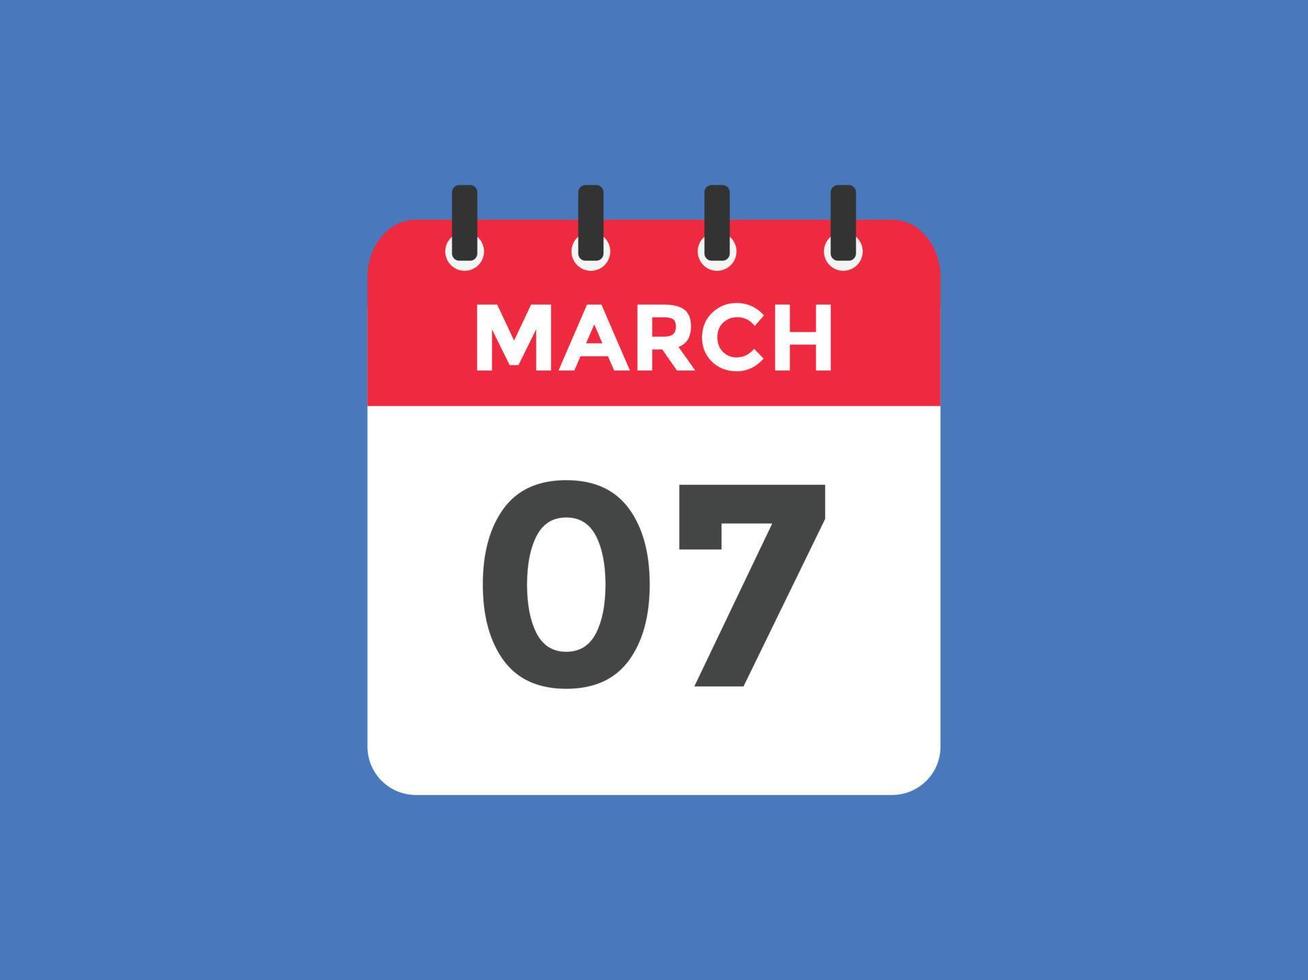 maart 7 kalender herinnering. 7e maart dagelijks kalender icoon sjabloon. kalender 7e maart icoon ontwerp sjabloon. vector illustratie